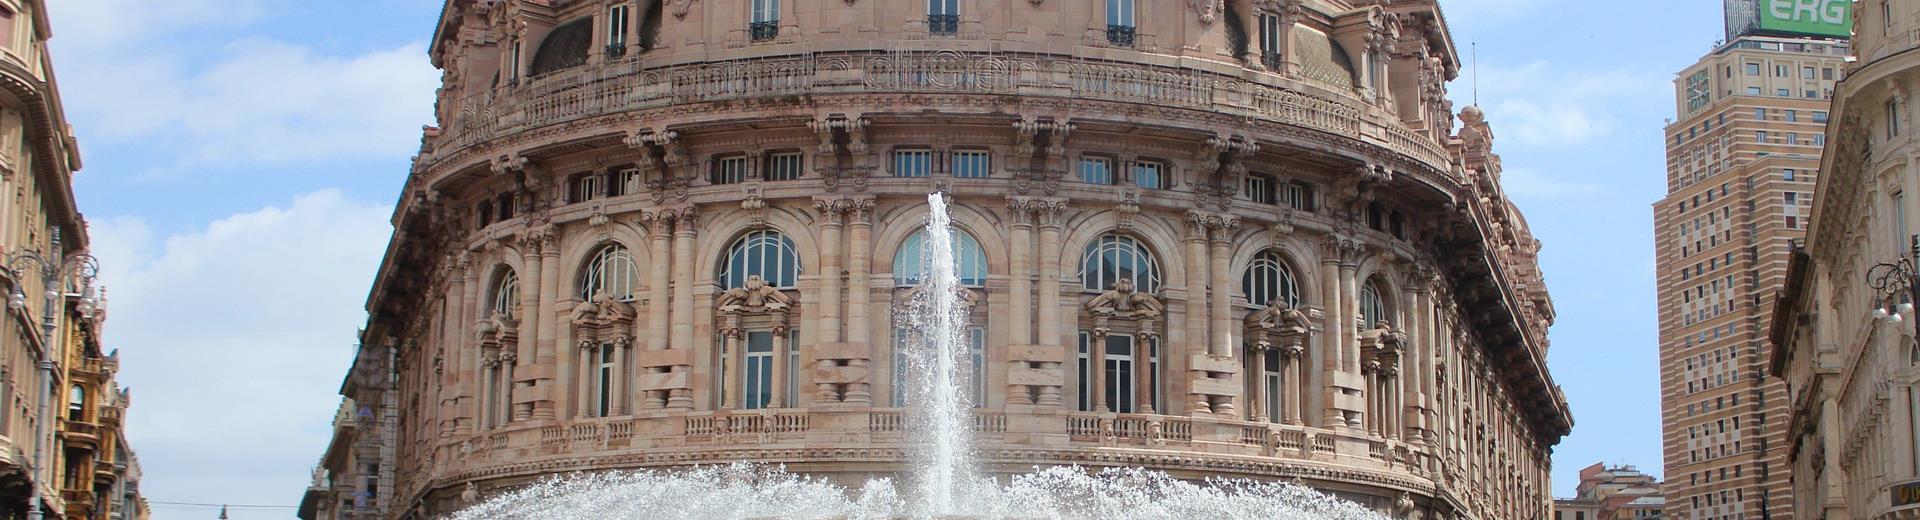 Palazzi e musei - Scopri le bellezze di Genova con hotel Metropoli